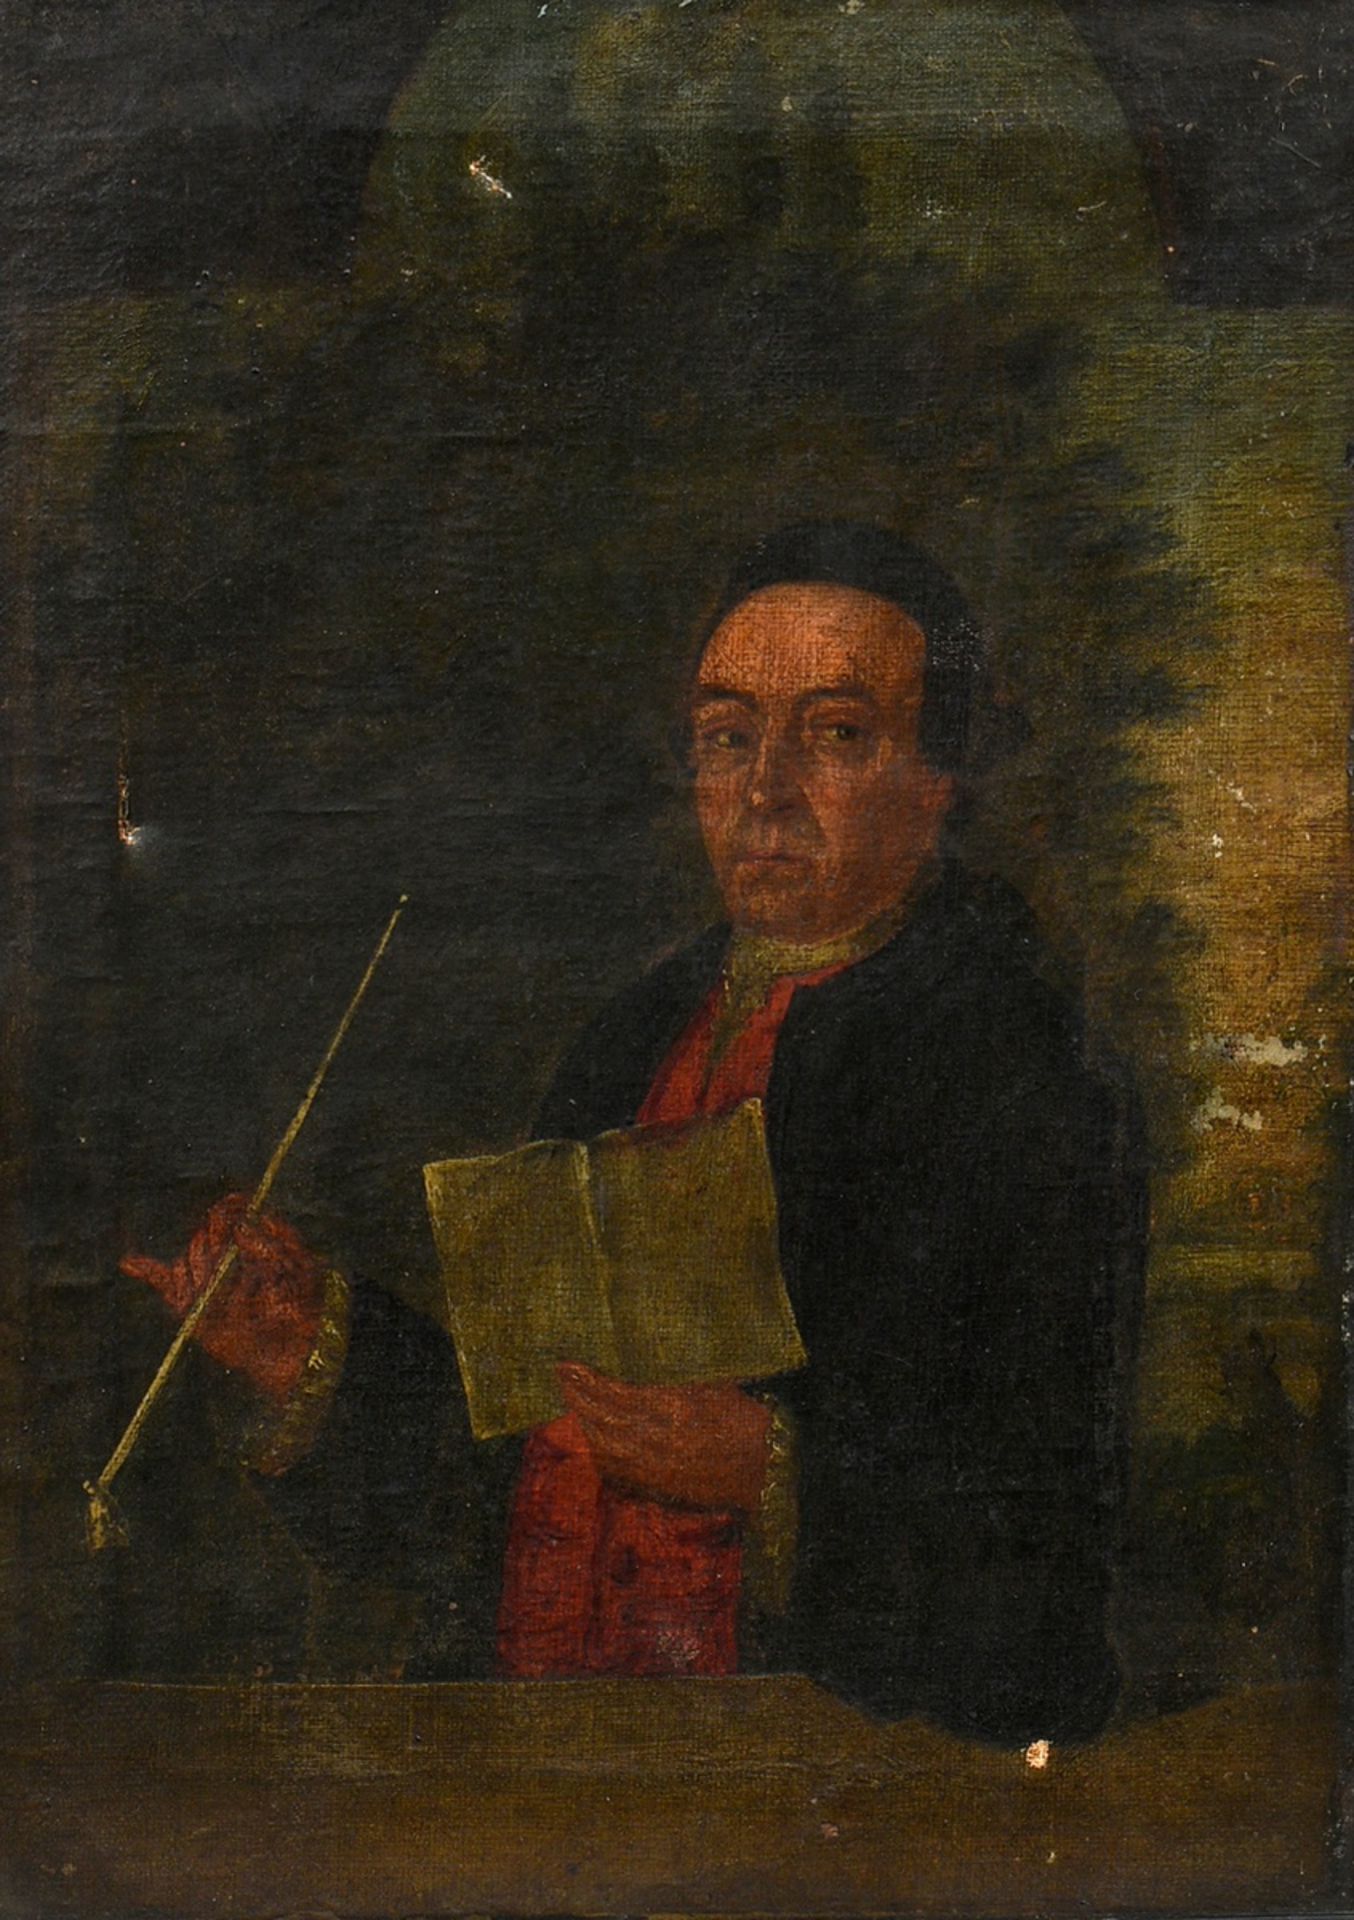 Unbekannter Künstler d. 18.Jh. "Portrait des Hamburger Notars Helbing" 1777, Öl/Leinwand, verso dat